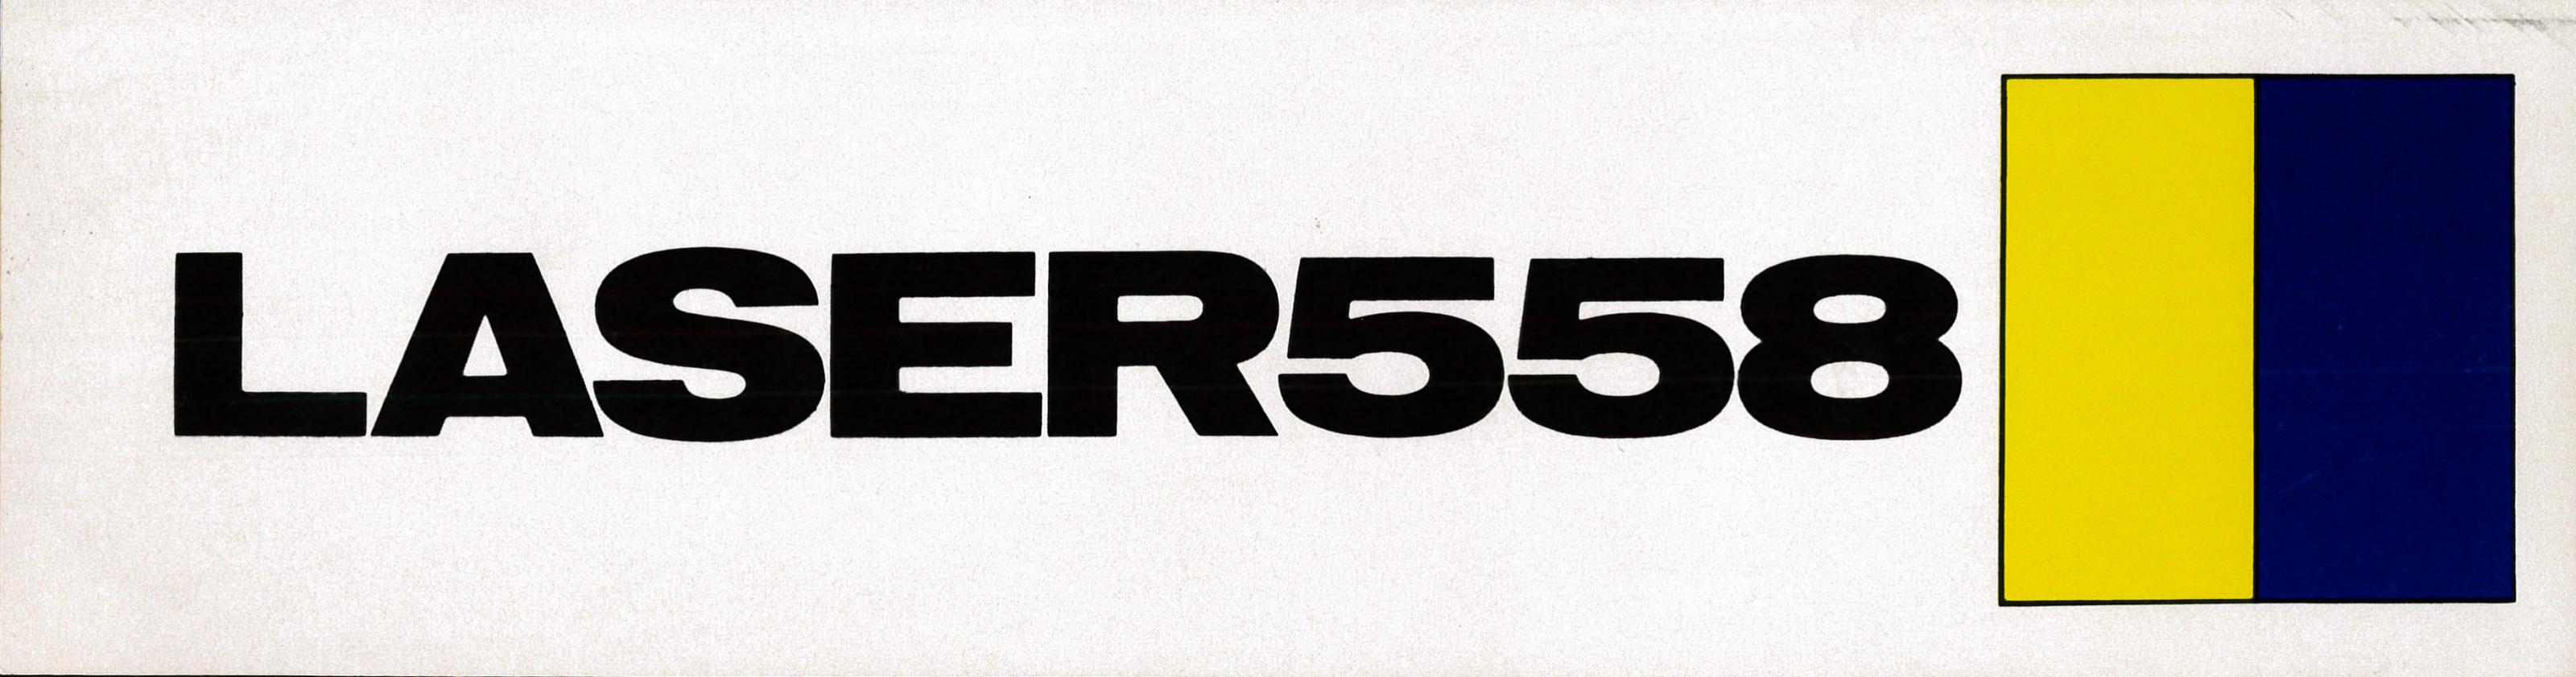 19840601 Laser 558 sticker.jpg